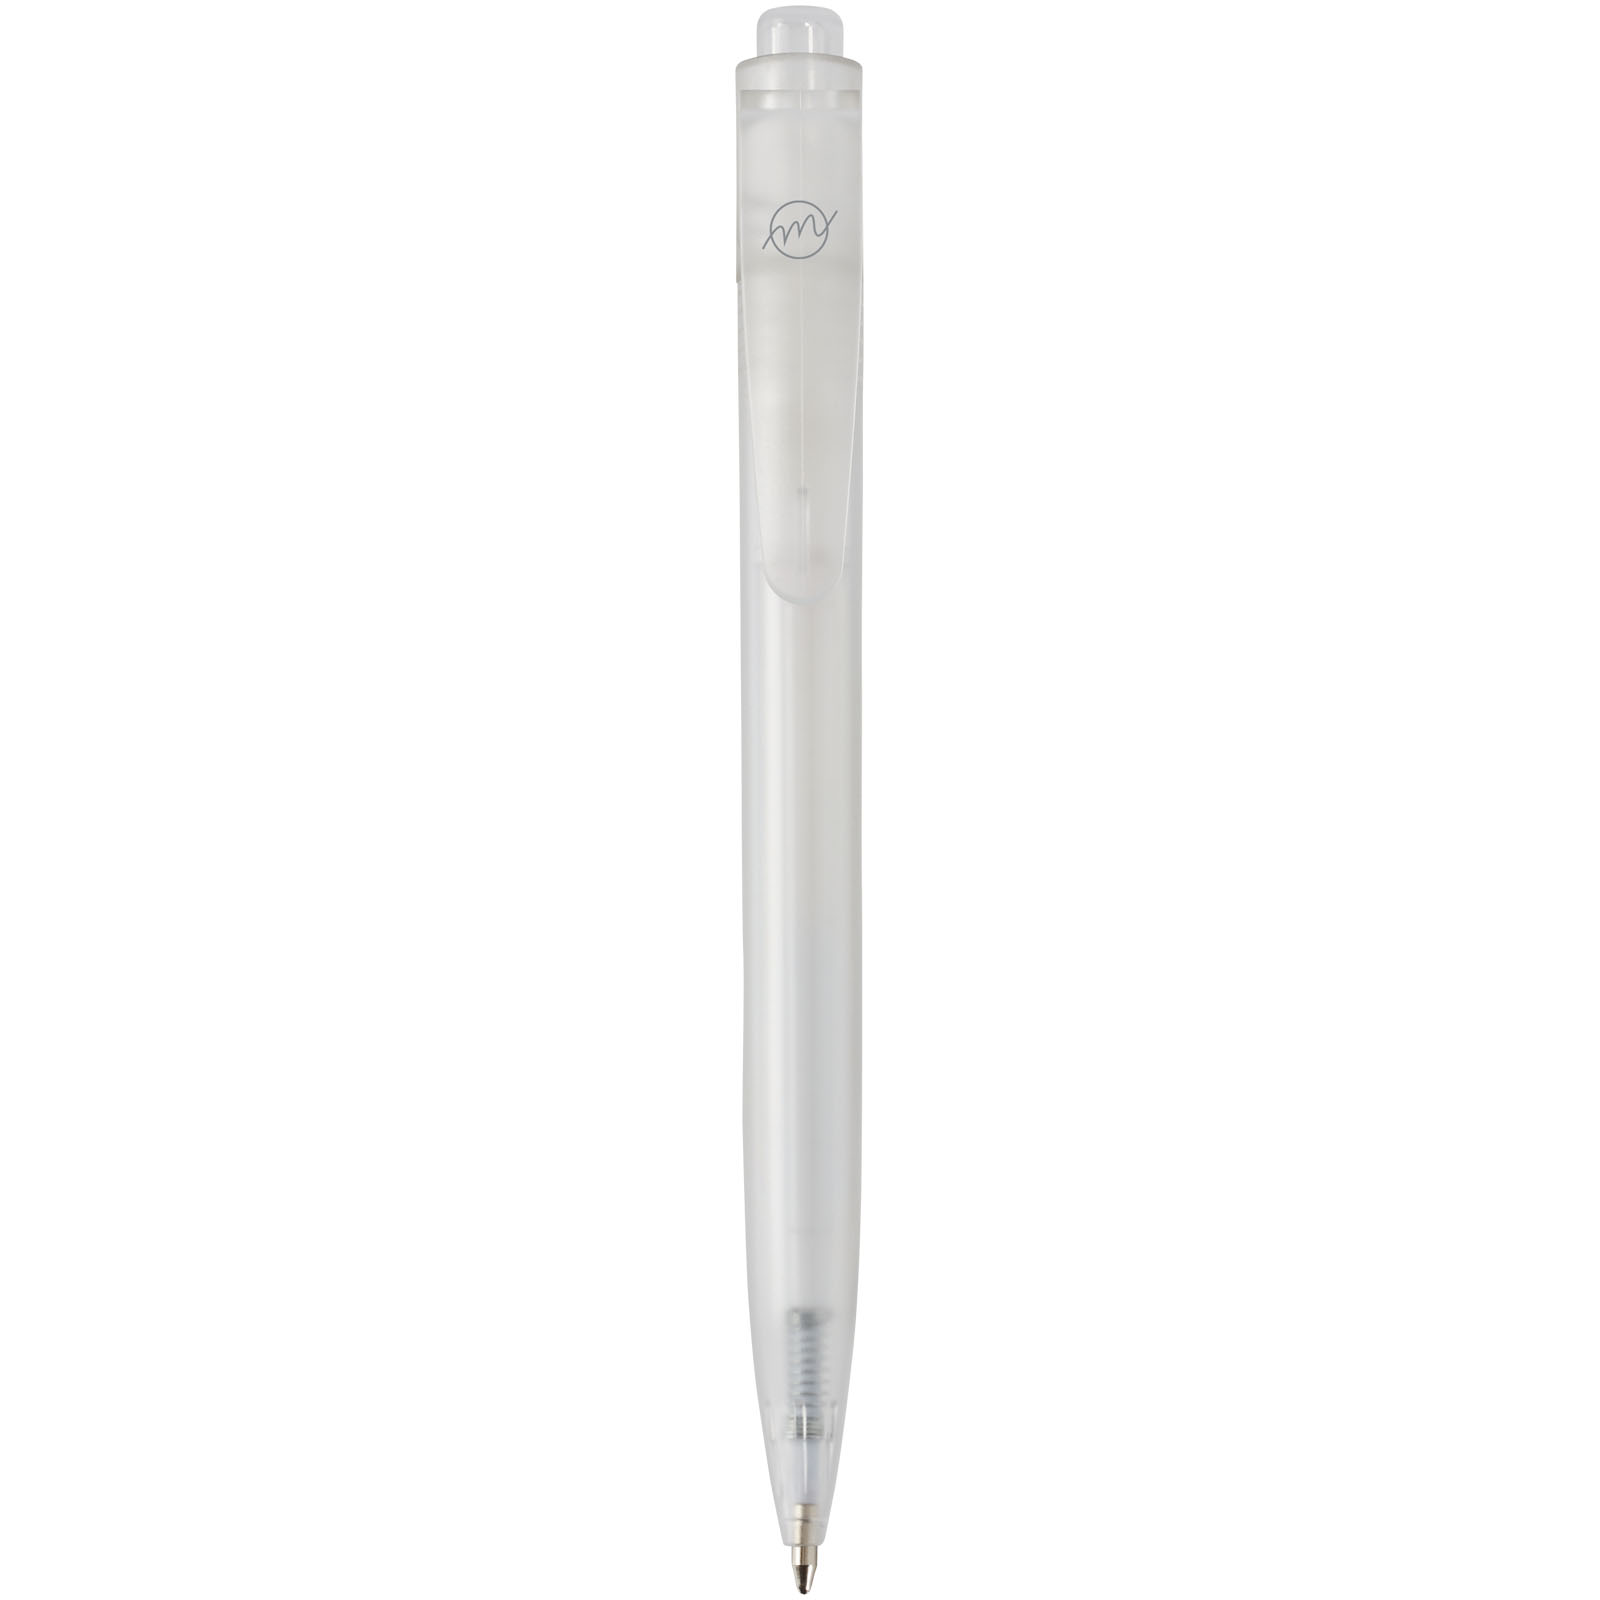 Ballpoint Pens - Thalaasa ocean-bound plastic ballpoint pen